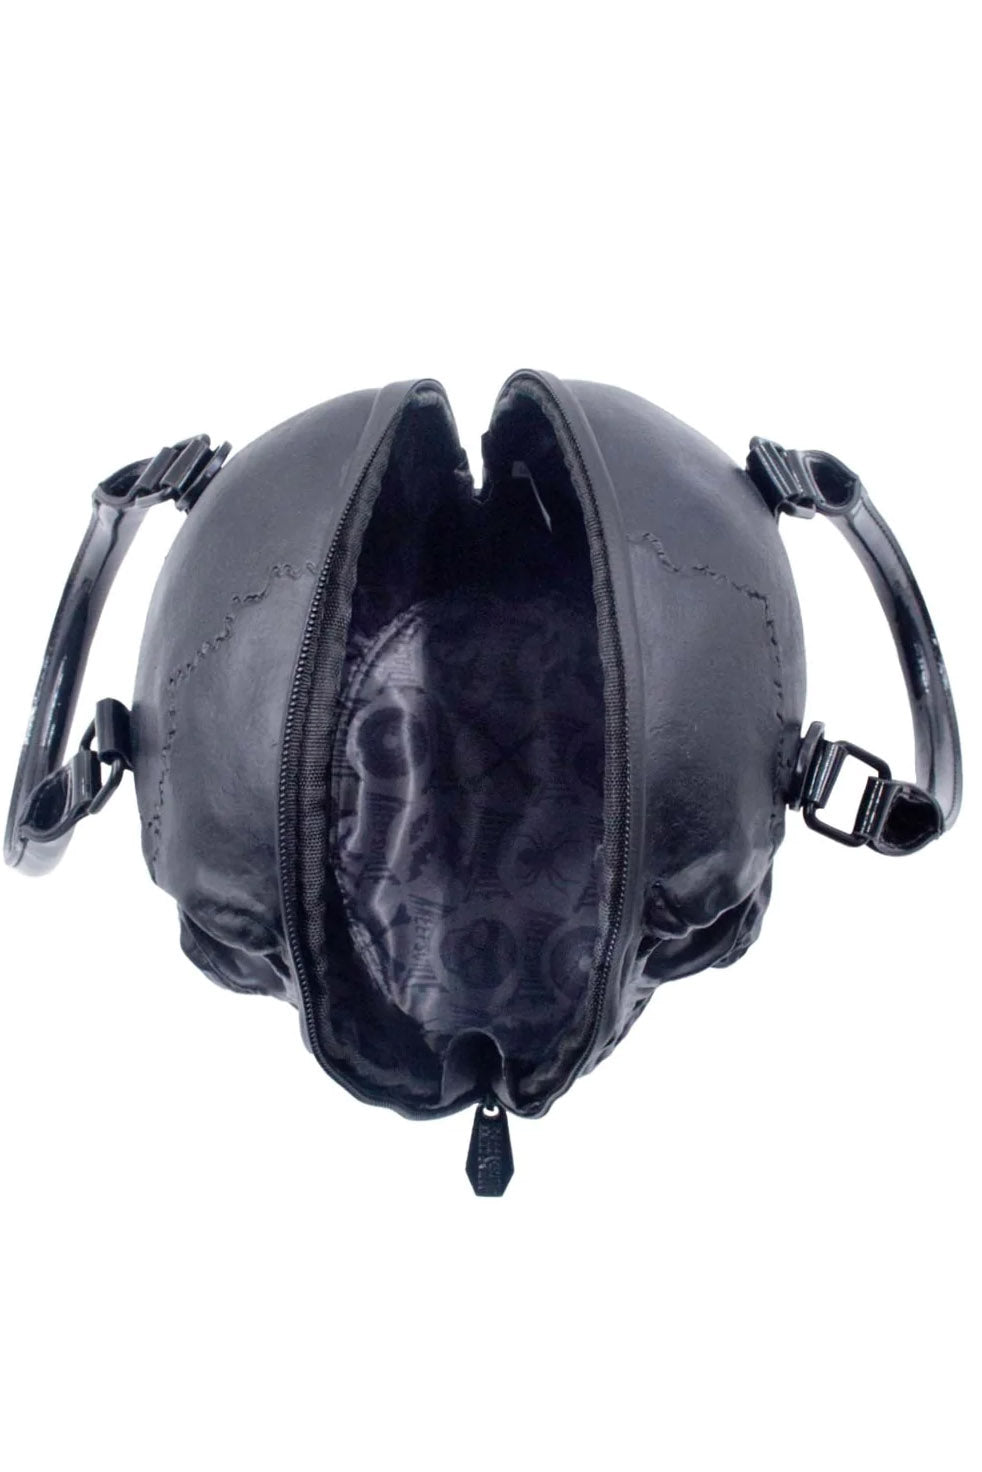 Skull Collection Handbag [BLACK]